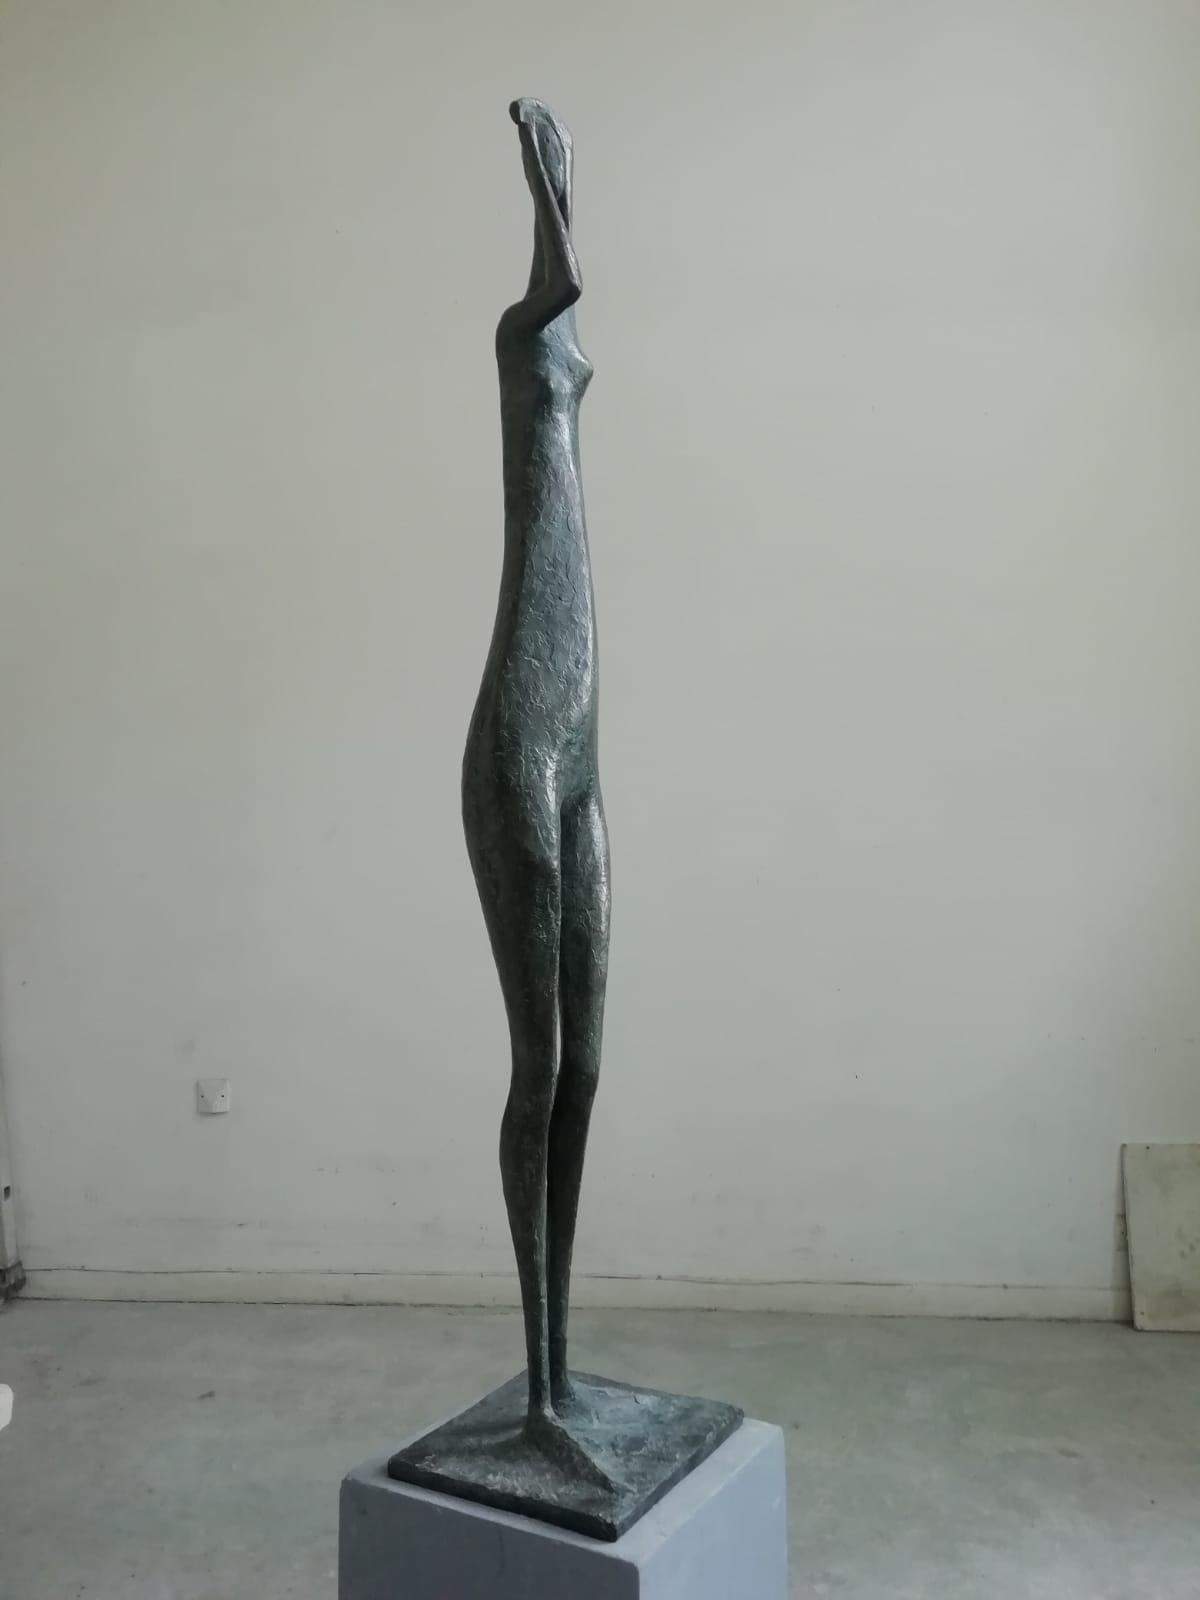 Grande Figure debout bras levés I, sculpture en bronze à grande échelle de l'artiste contemporain français Pierre Yermia. Bronze, 132 cm × 27 cm × 25 cm. Édition limitée à 8 exemplaires et 4 épreuves d'artiste.
